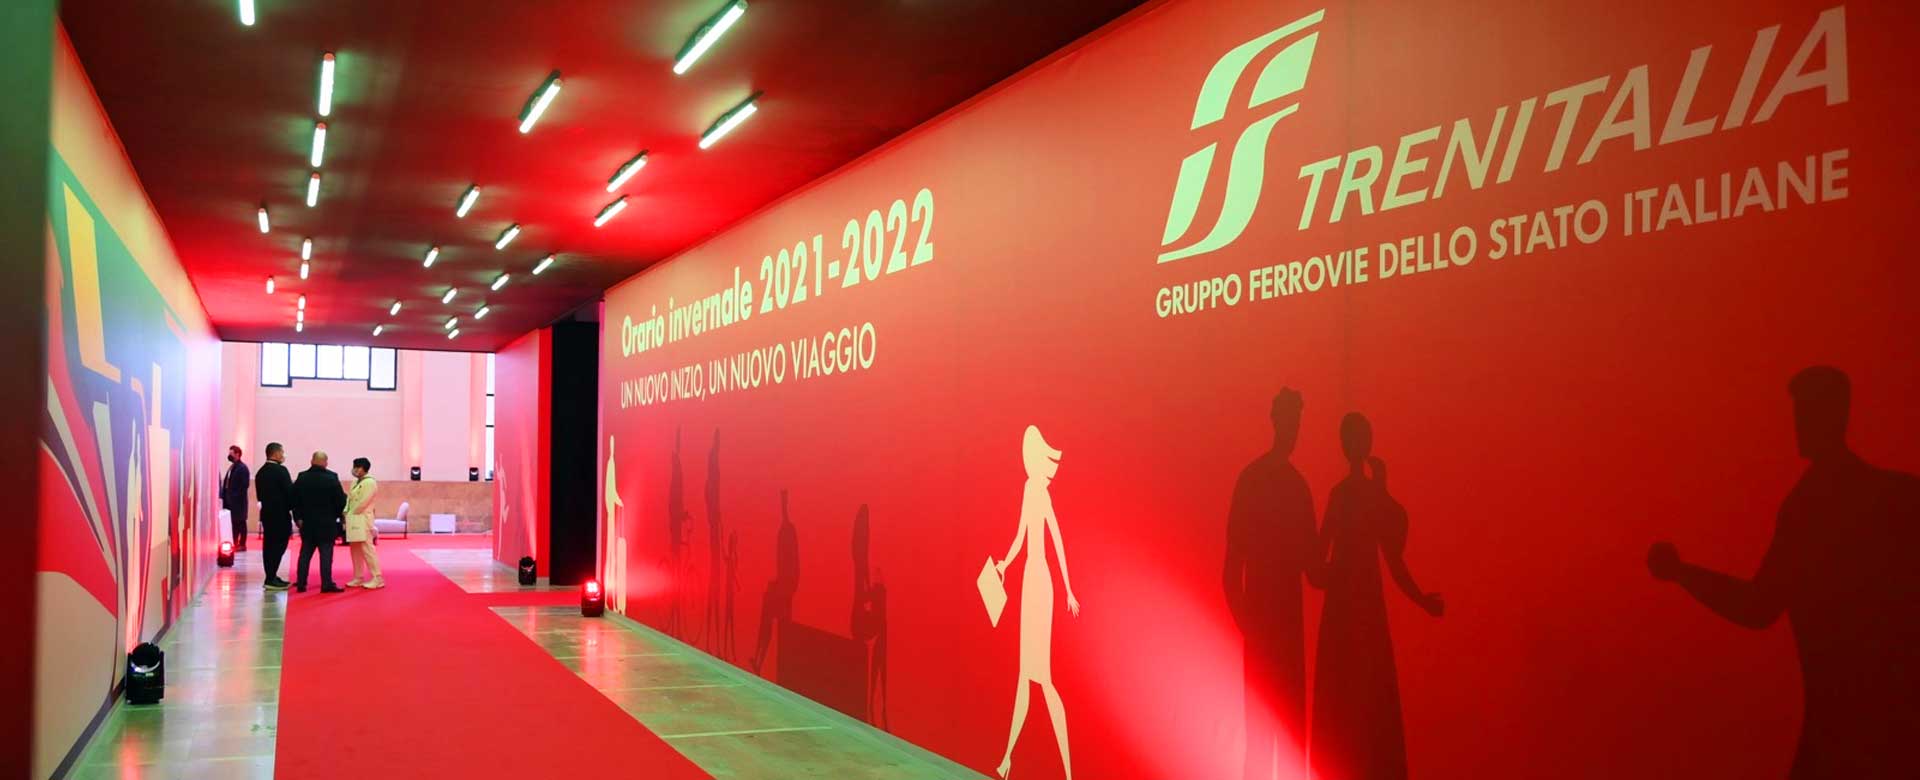 Un momento della presentazione a Milano del nuovo orario invernale 2021/2022 di Trenitalia